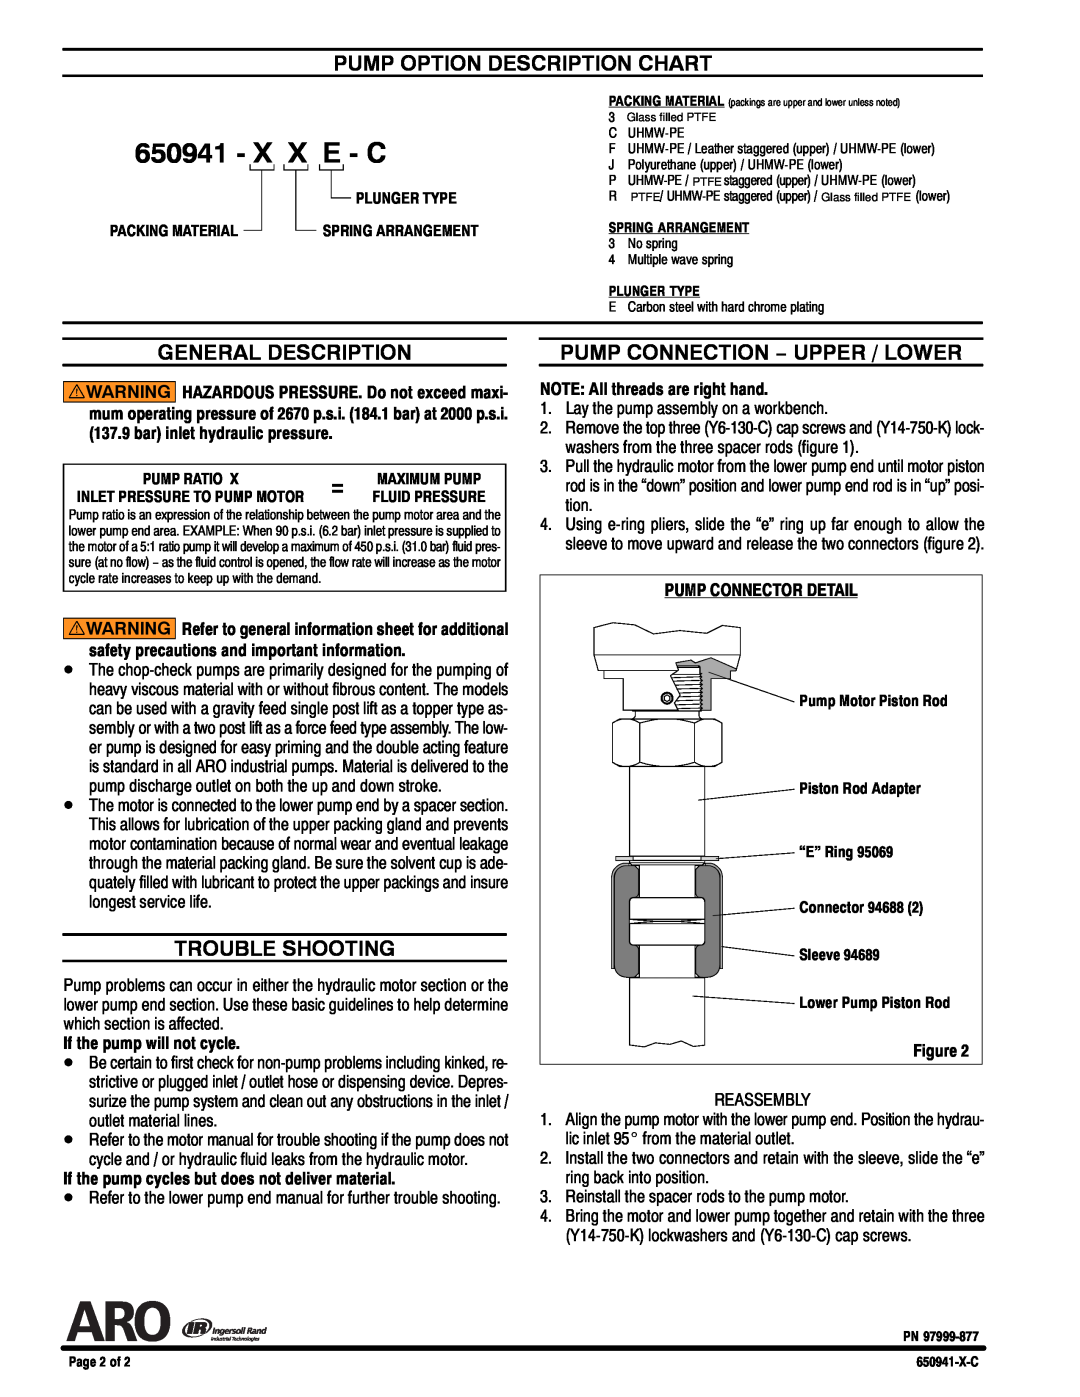 Ingersoll-Rand 650941-XXE-C specifications Pump Option Description Chart, General Description, Trouble Shooting, X X E - C 